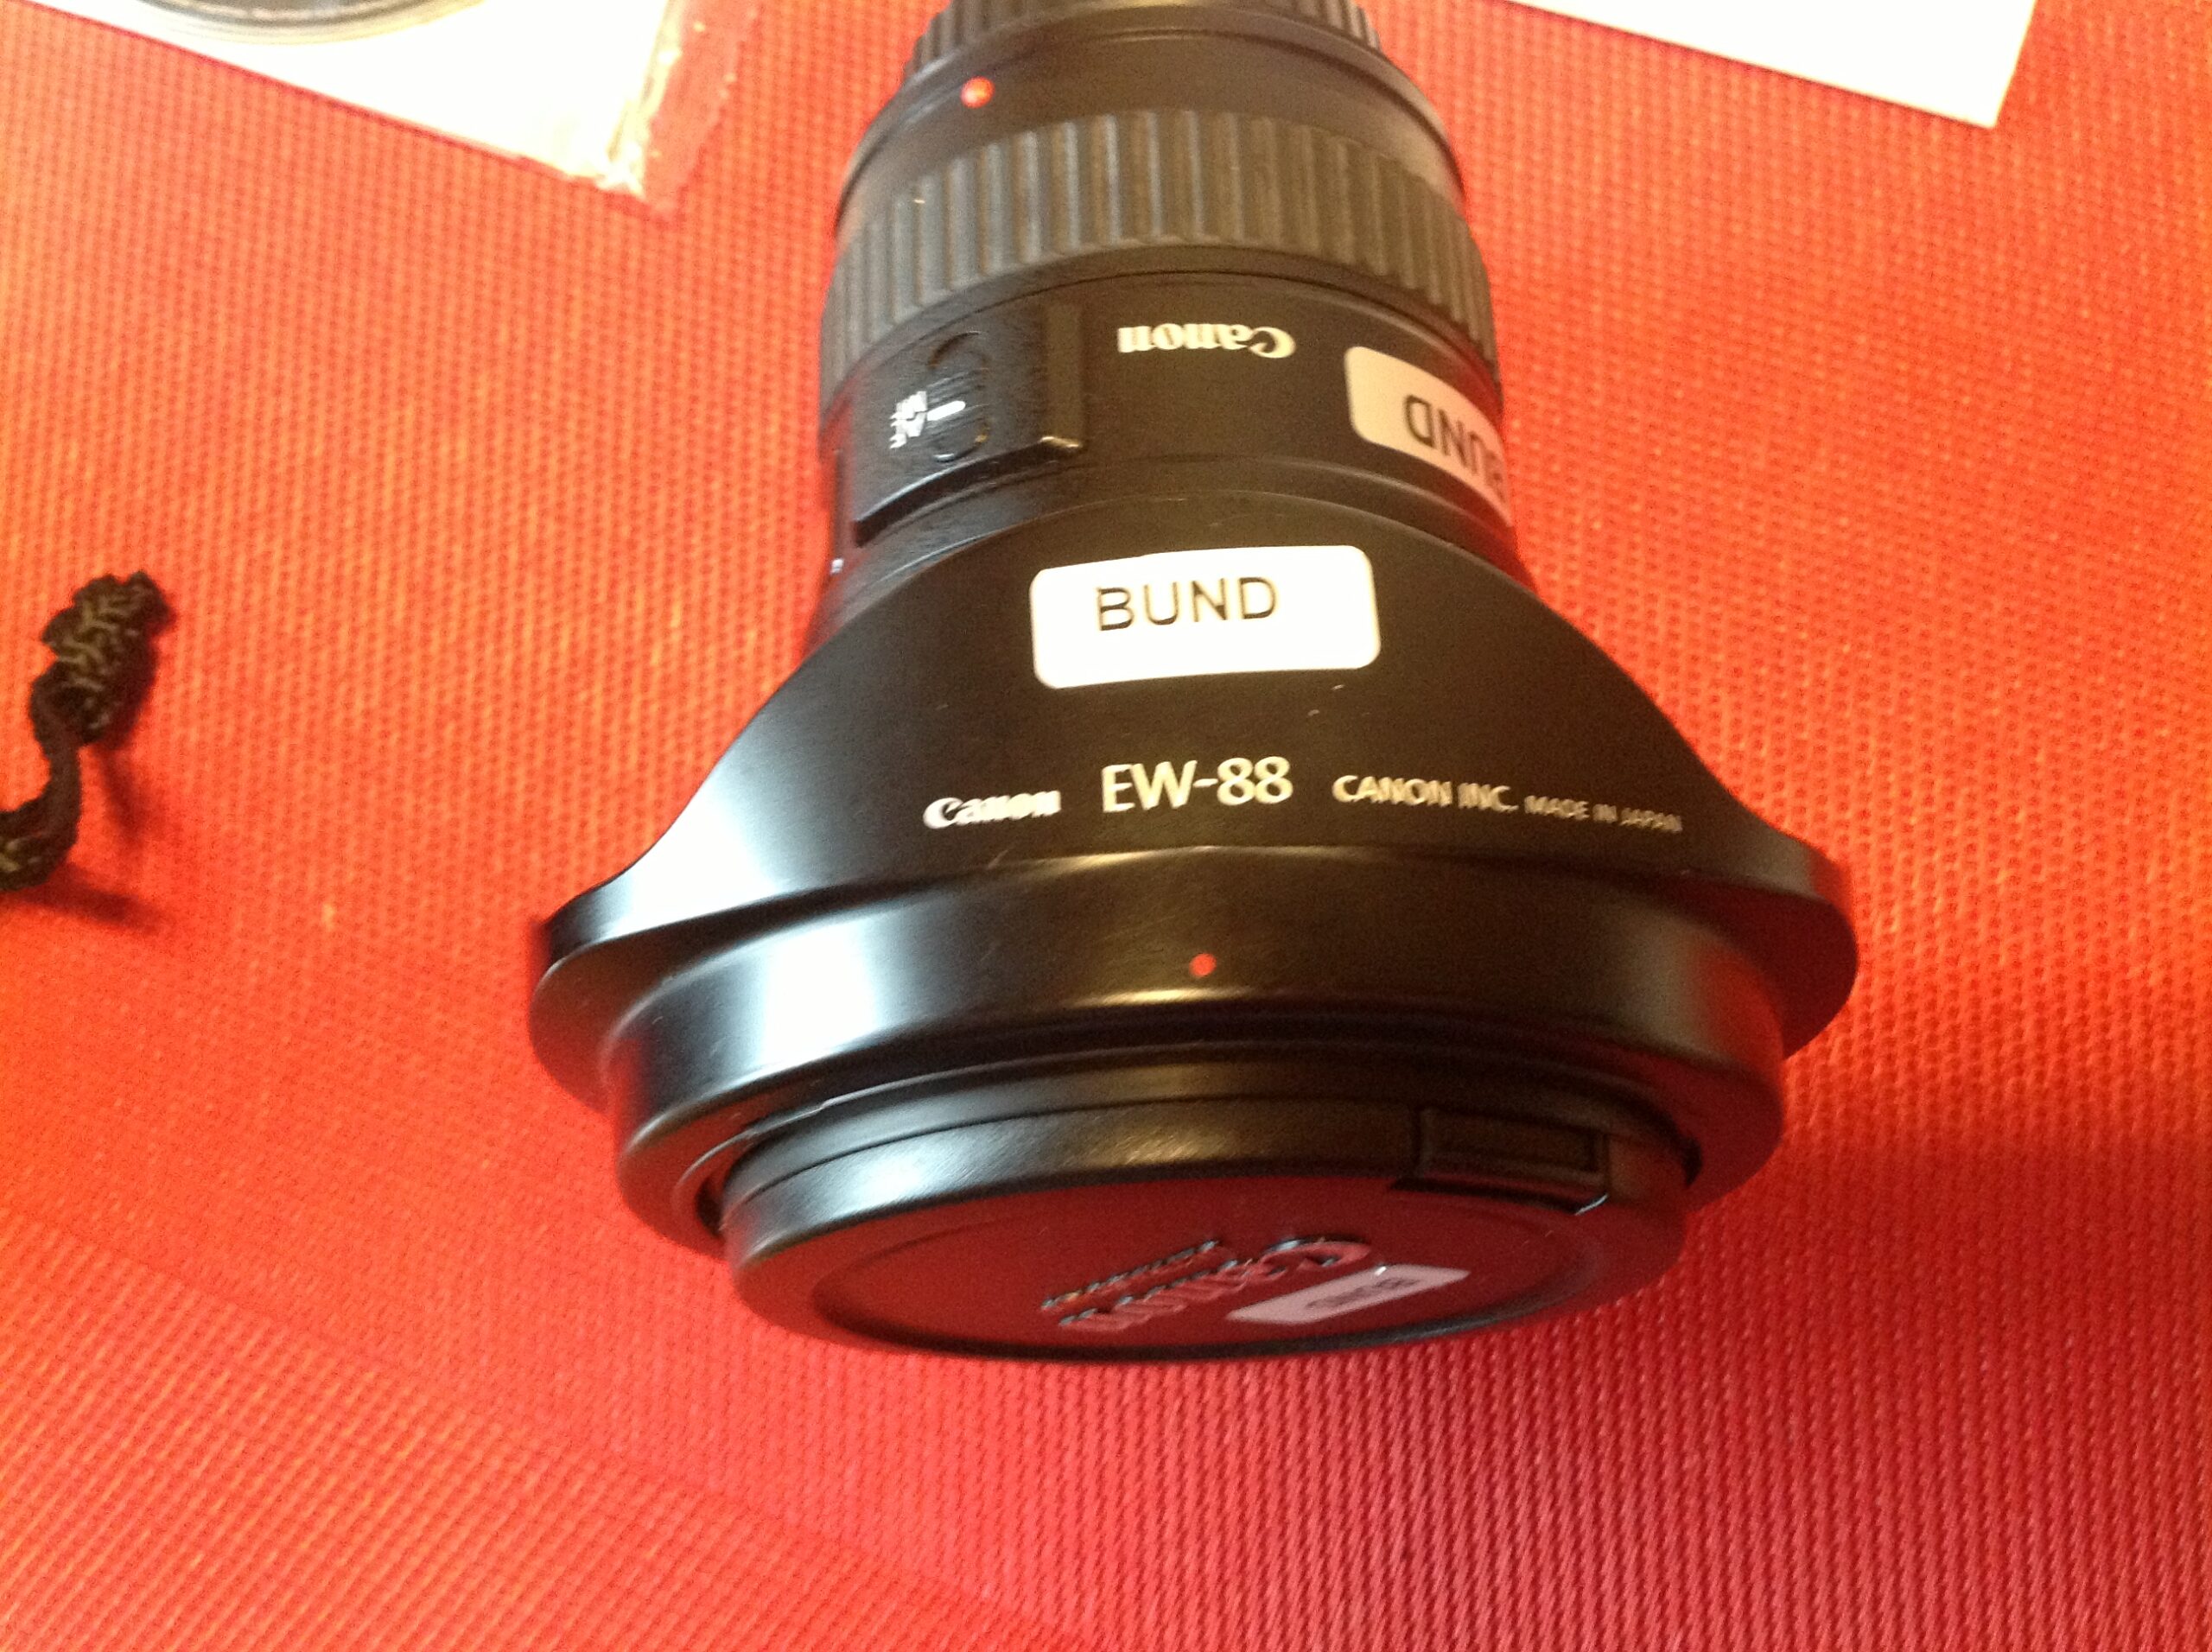 Canon Ultrasonic EF 16-35 mm f/2.8 L II USM Makro Objektiv